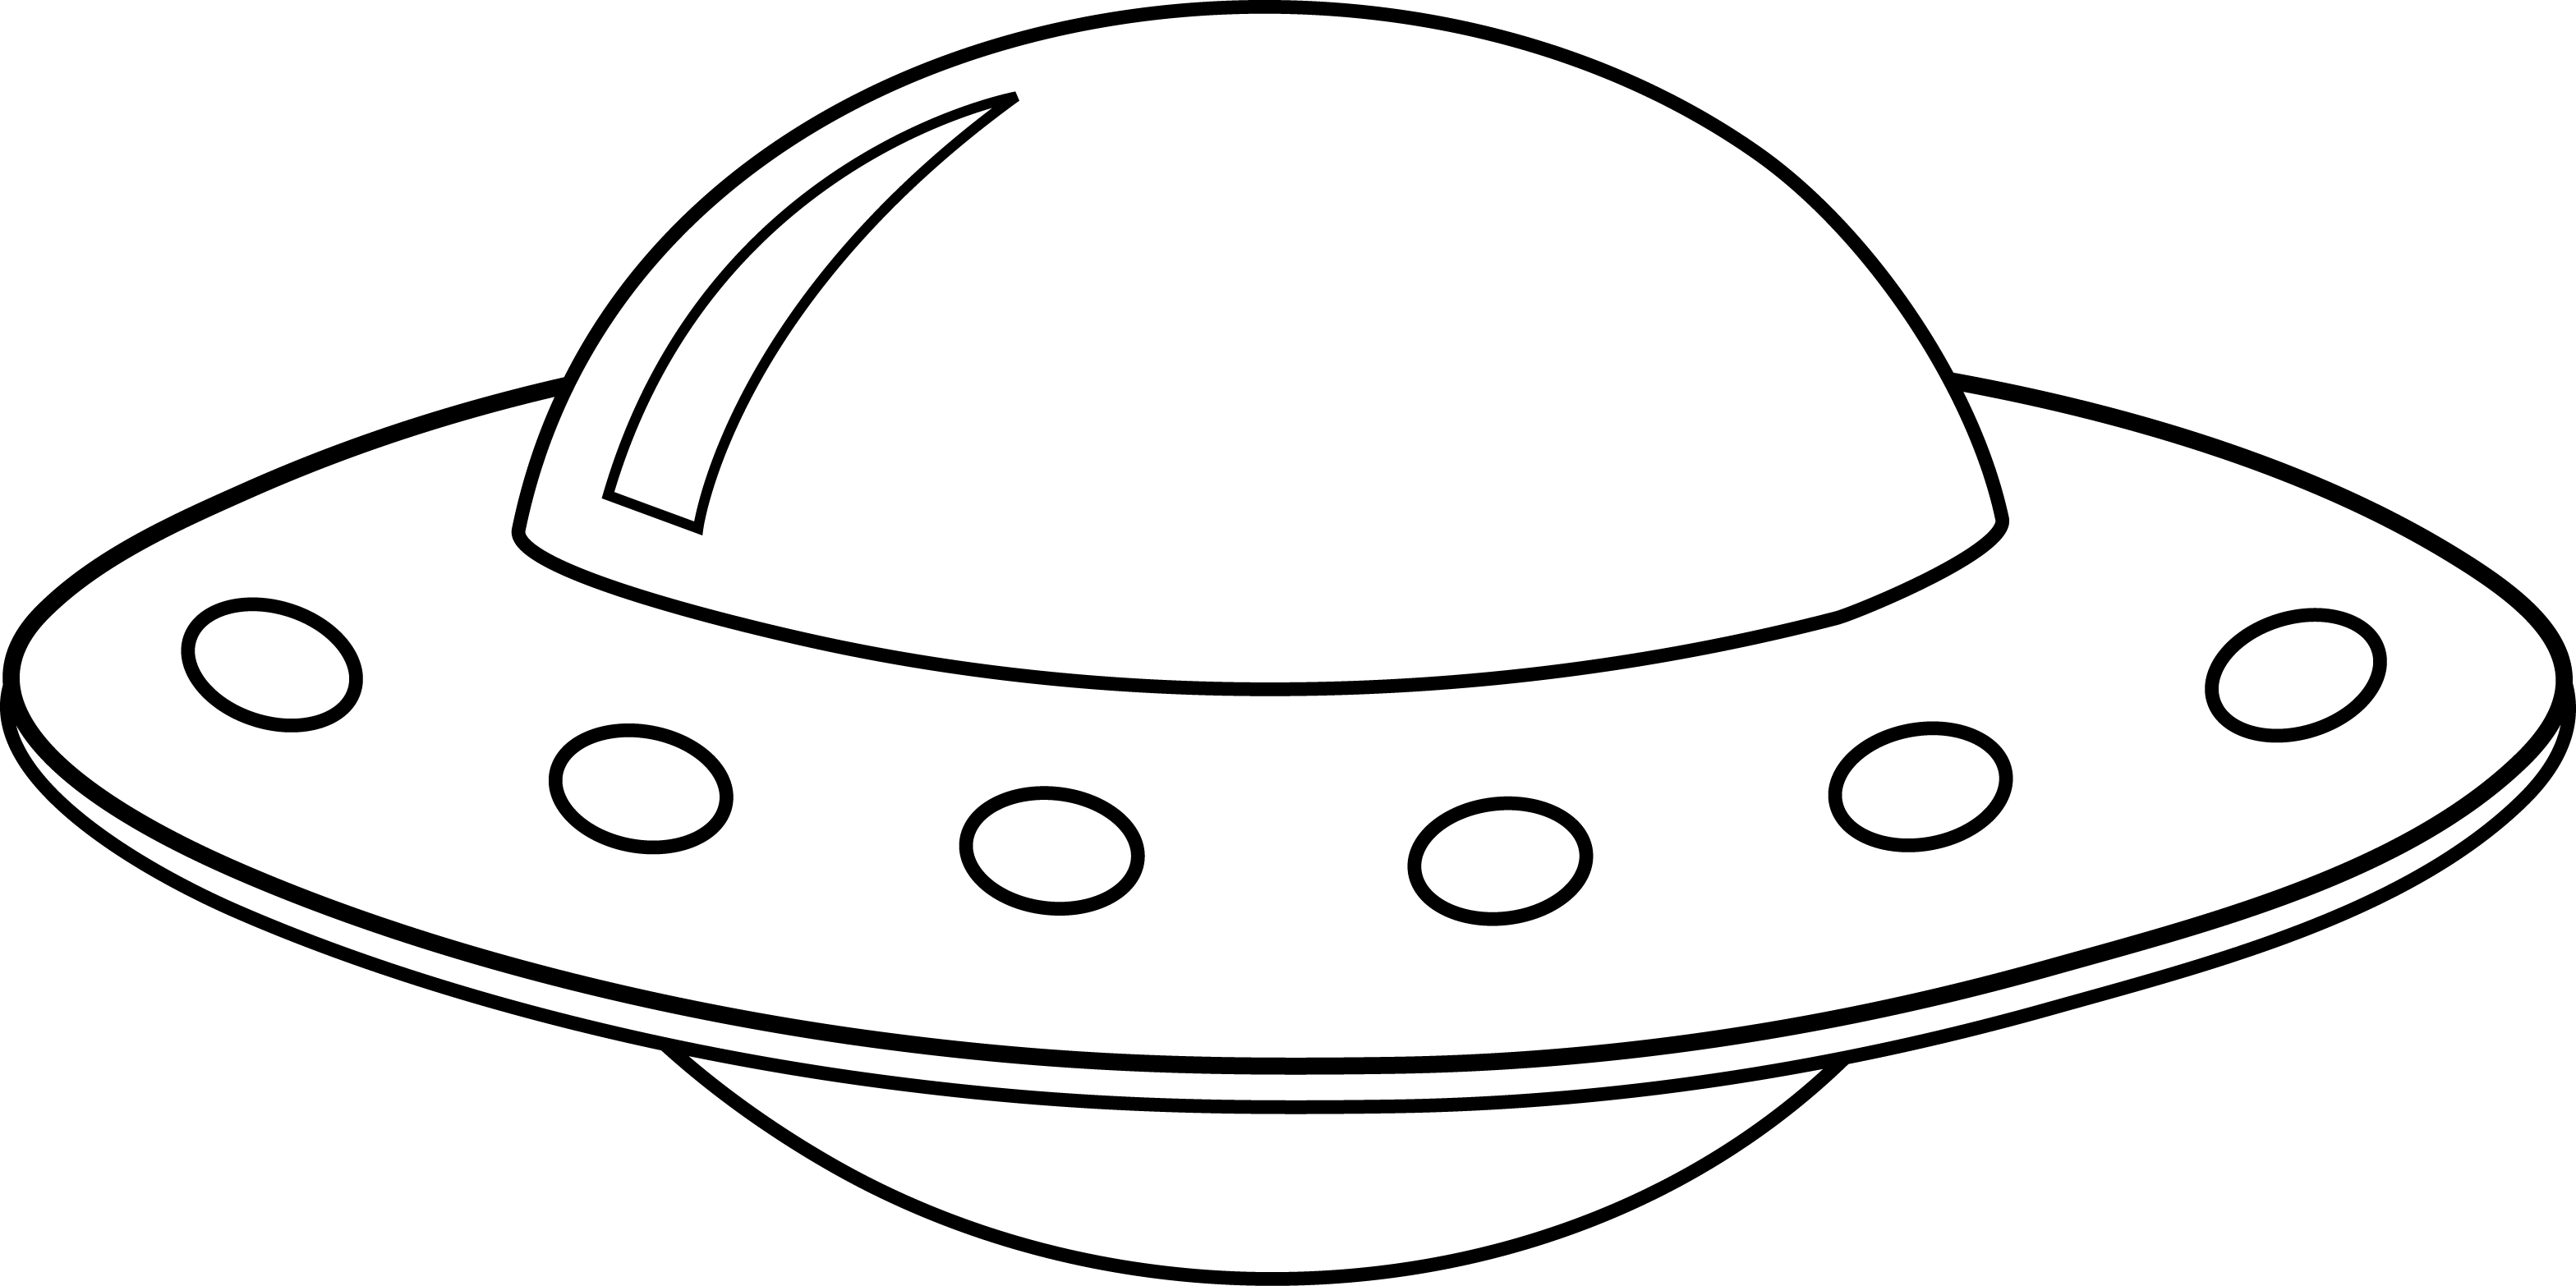 Декоративная тарелка 270 мм форма Европейская 2 рисунок Космическая фотоохота арт. 80.91243.00.1